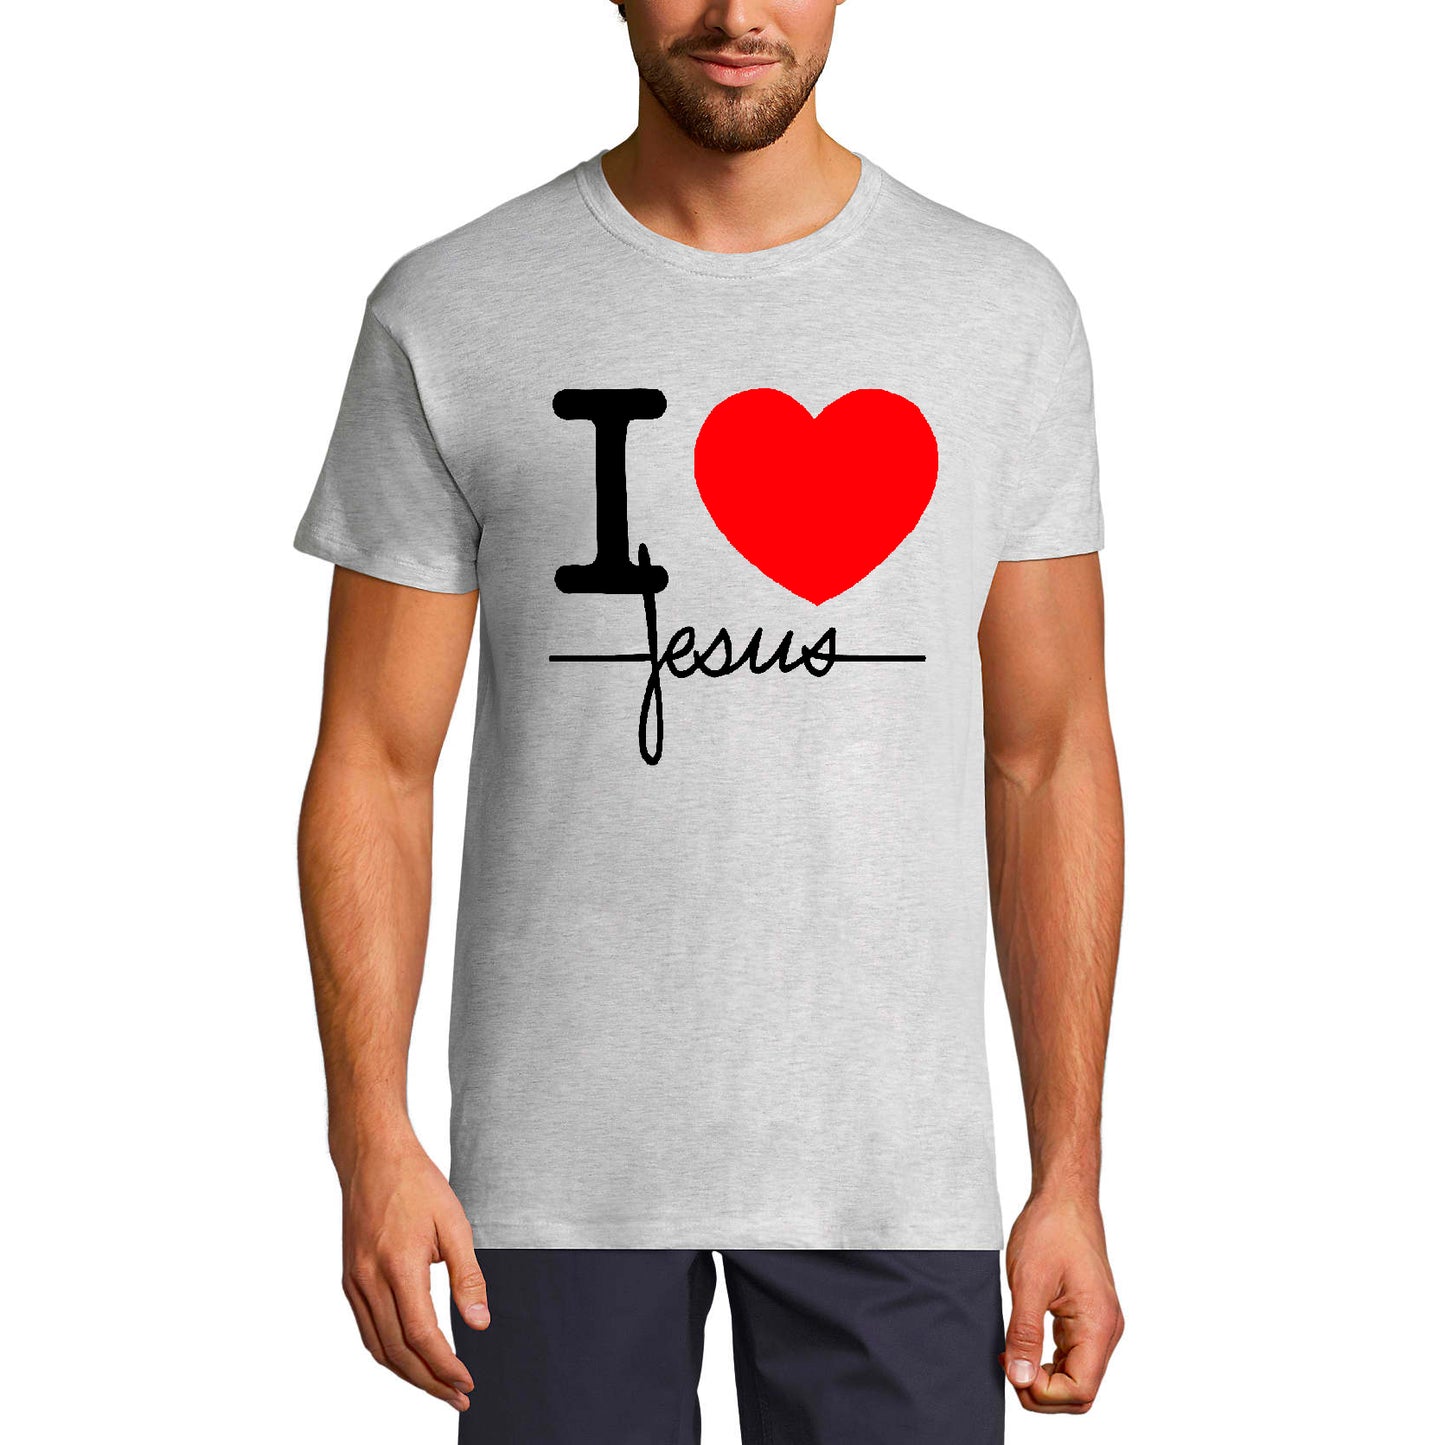 ULTRABASIC Men's T-Shirt I Love Jesus - Heart Religious Shirt